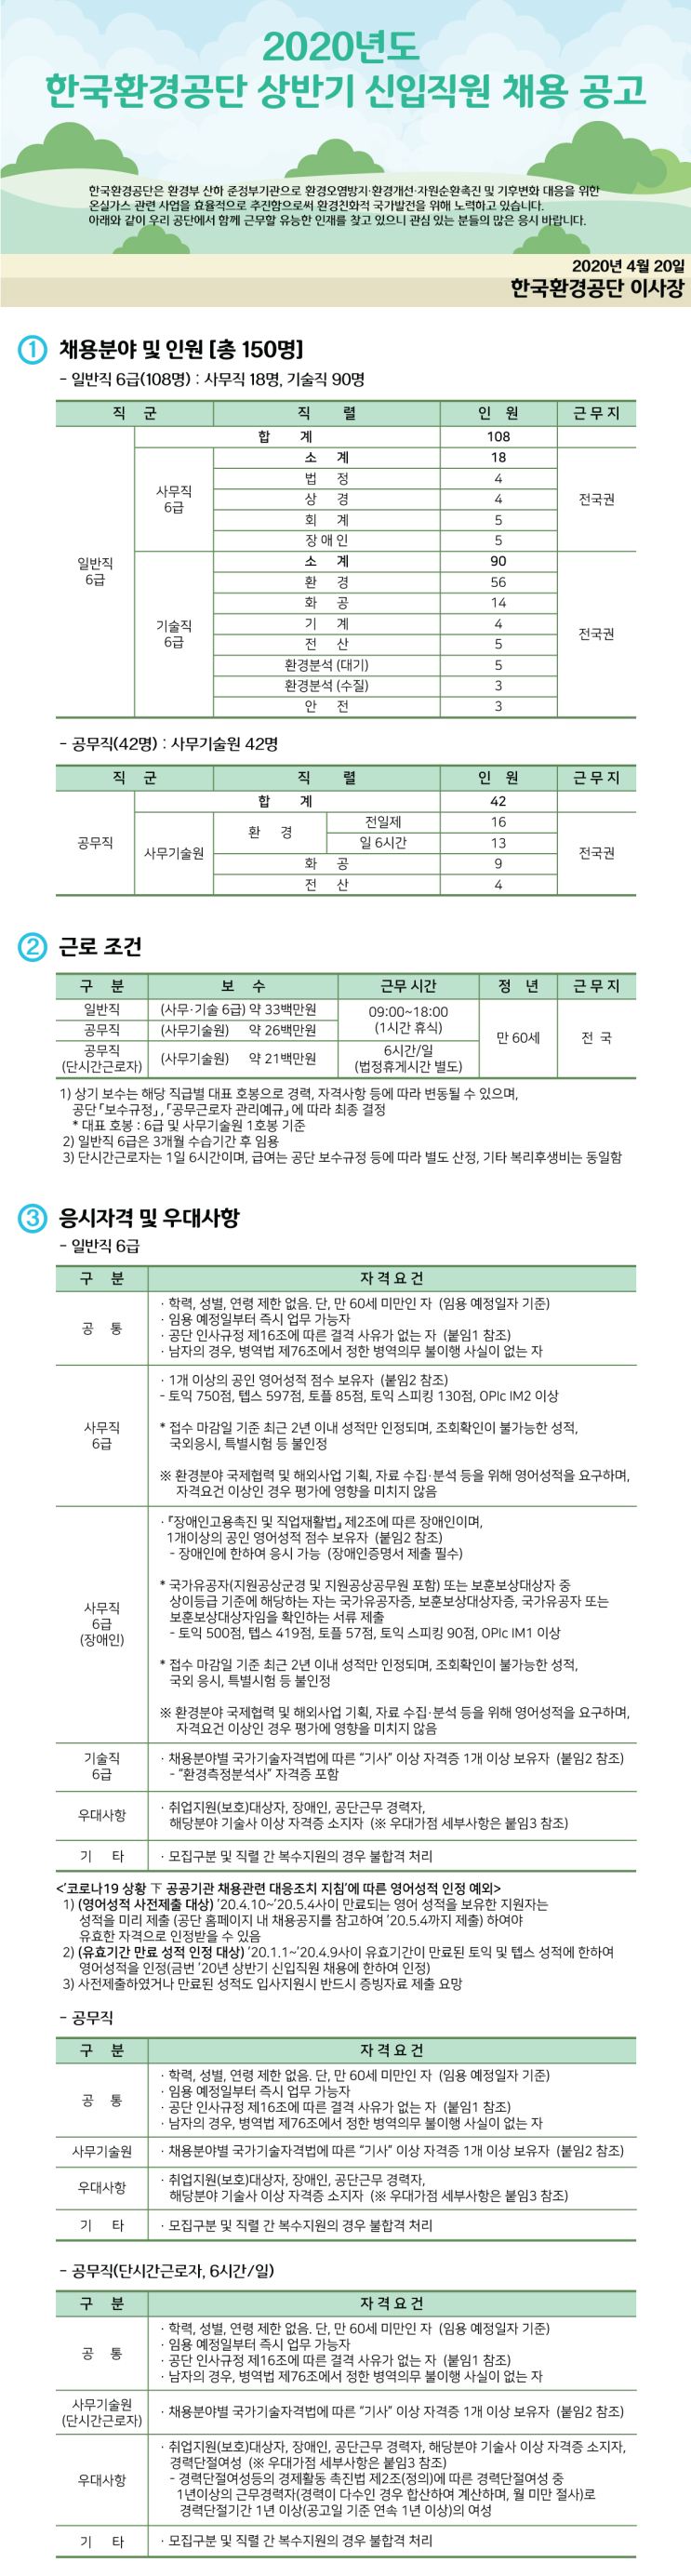 [채용][한국환경공단] 2020년도 상반기 신입직원 채용